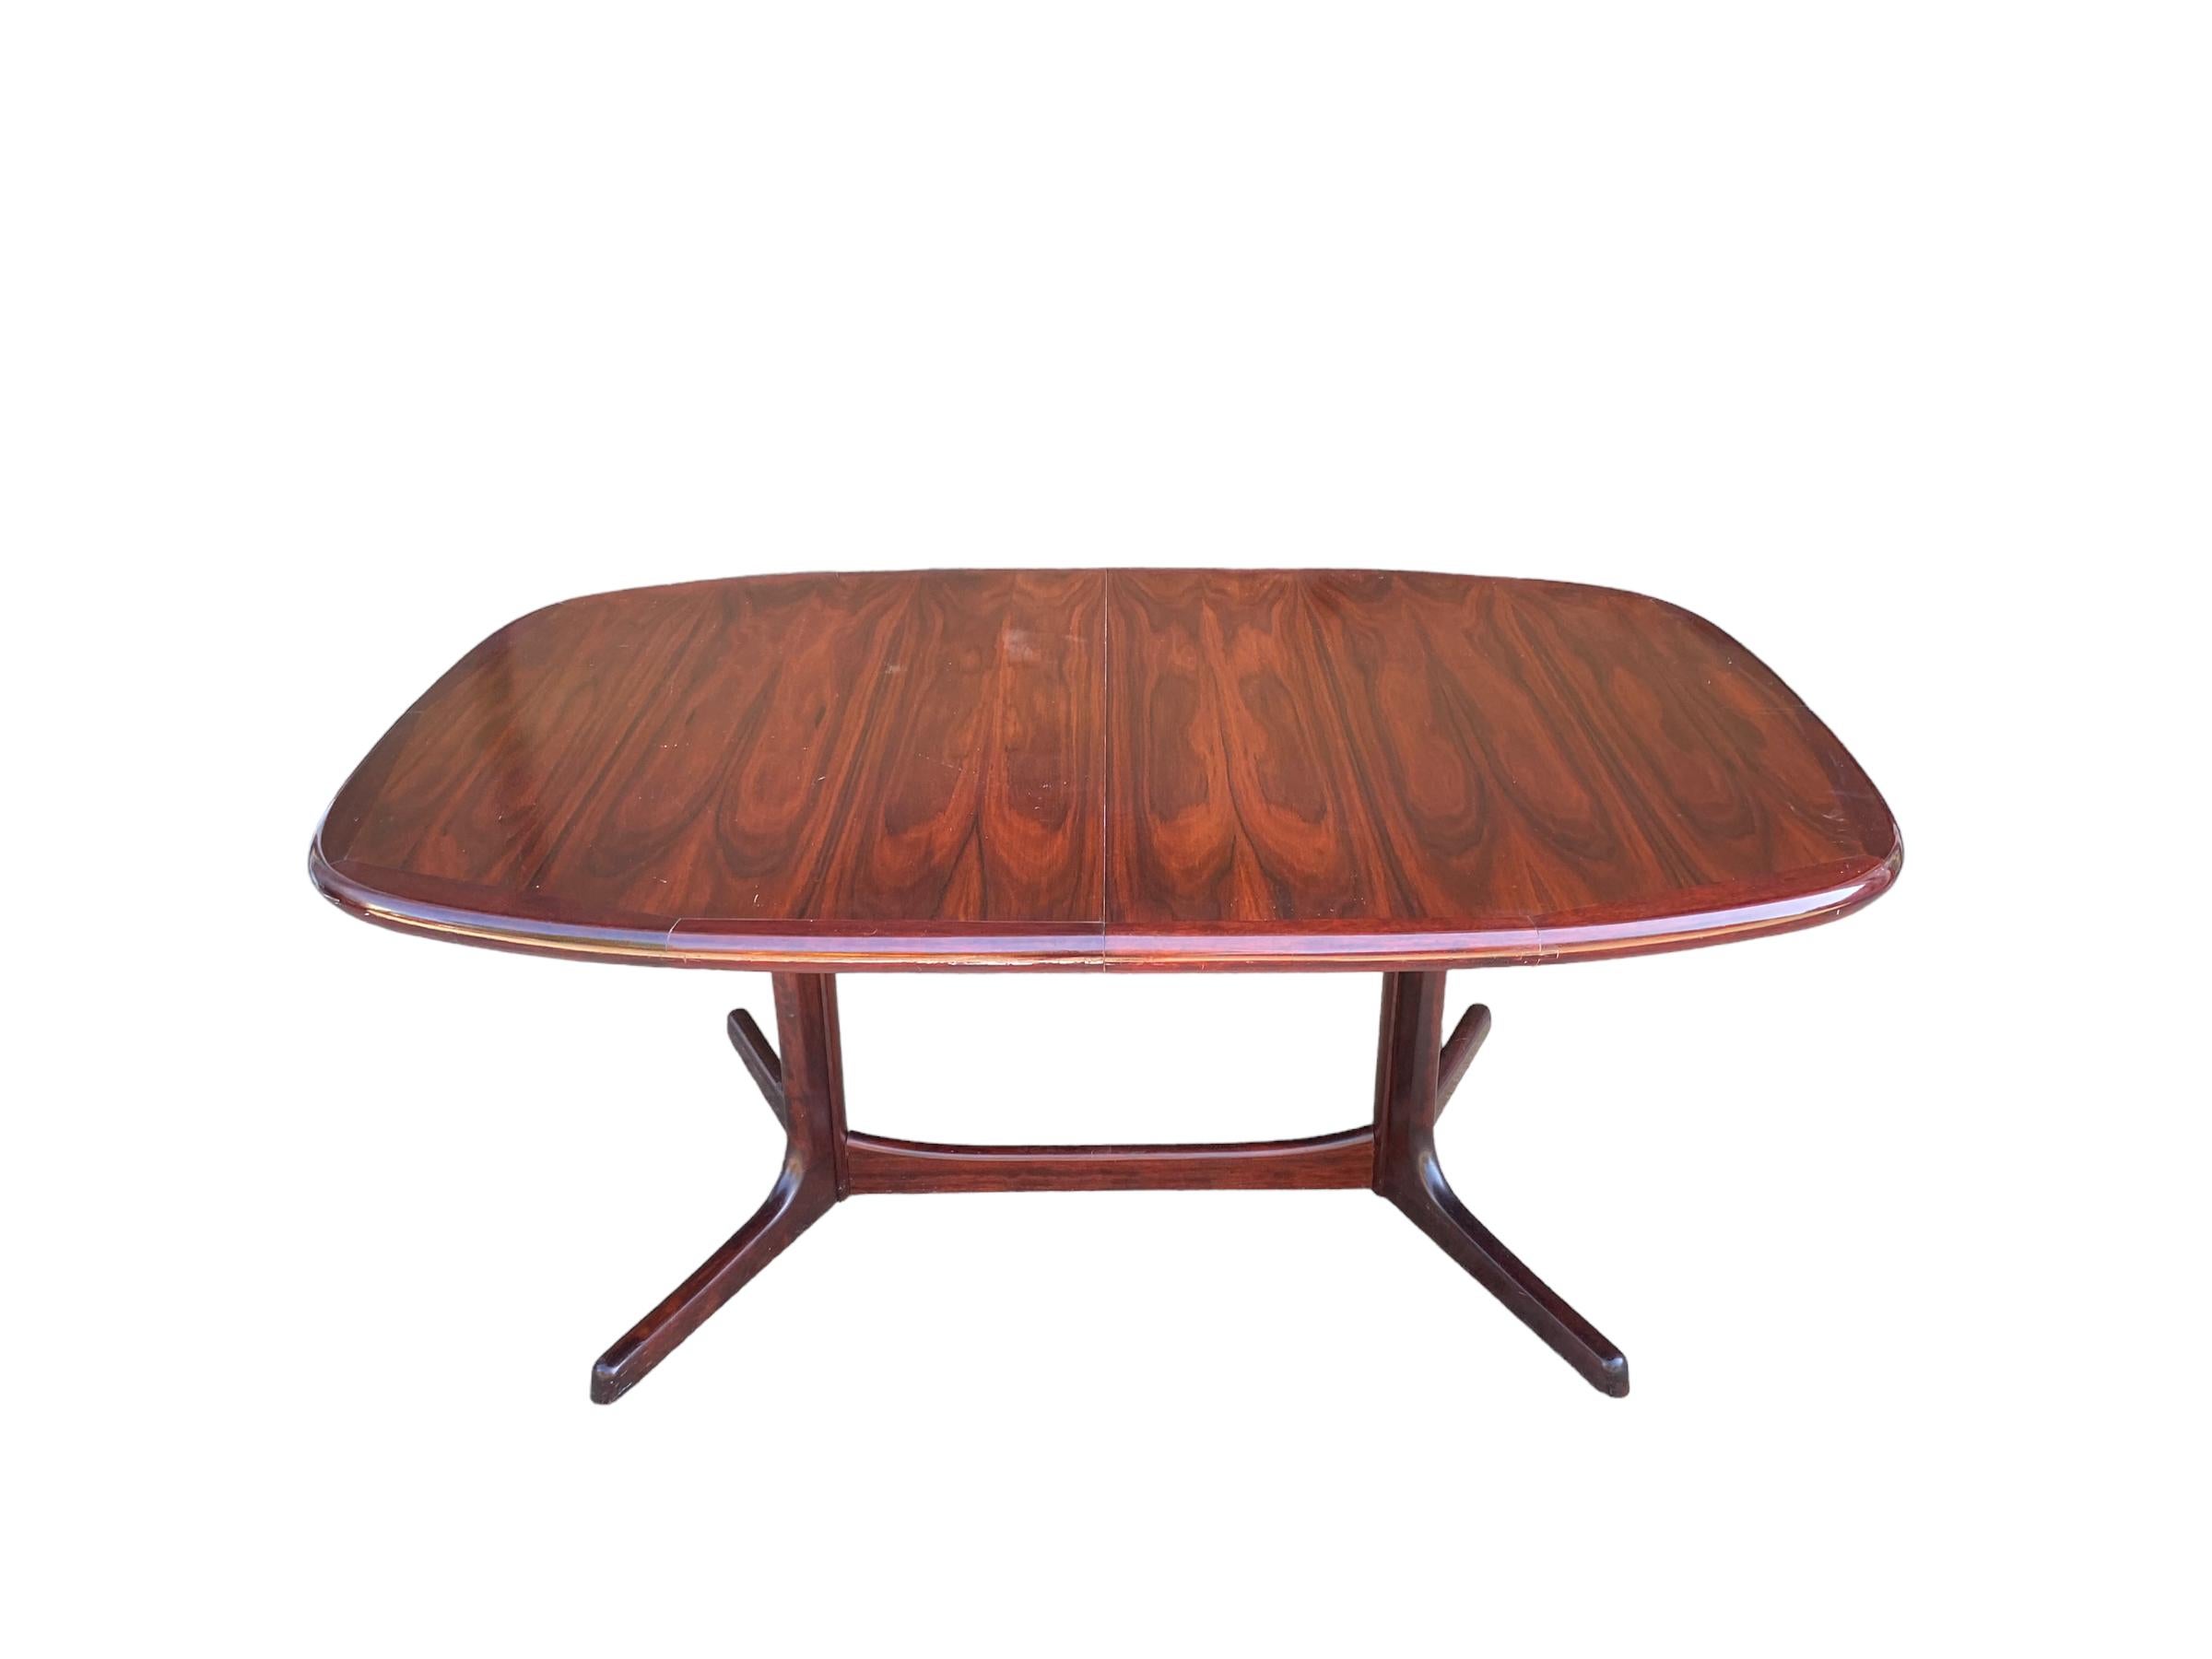 Esstisch aus Palisanderholz von Dyrlund aus Dänemark. Dieser ovale Tisch zeichnet sich durch eine atemberaubende Maserung und eine satte, gleichmäßige Palisanderfarbe aus. Der Tisch hat zwei Blätter, die bis zu 40